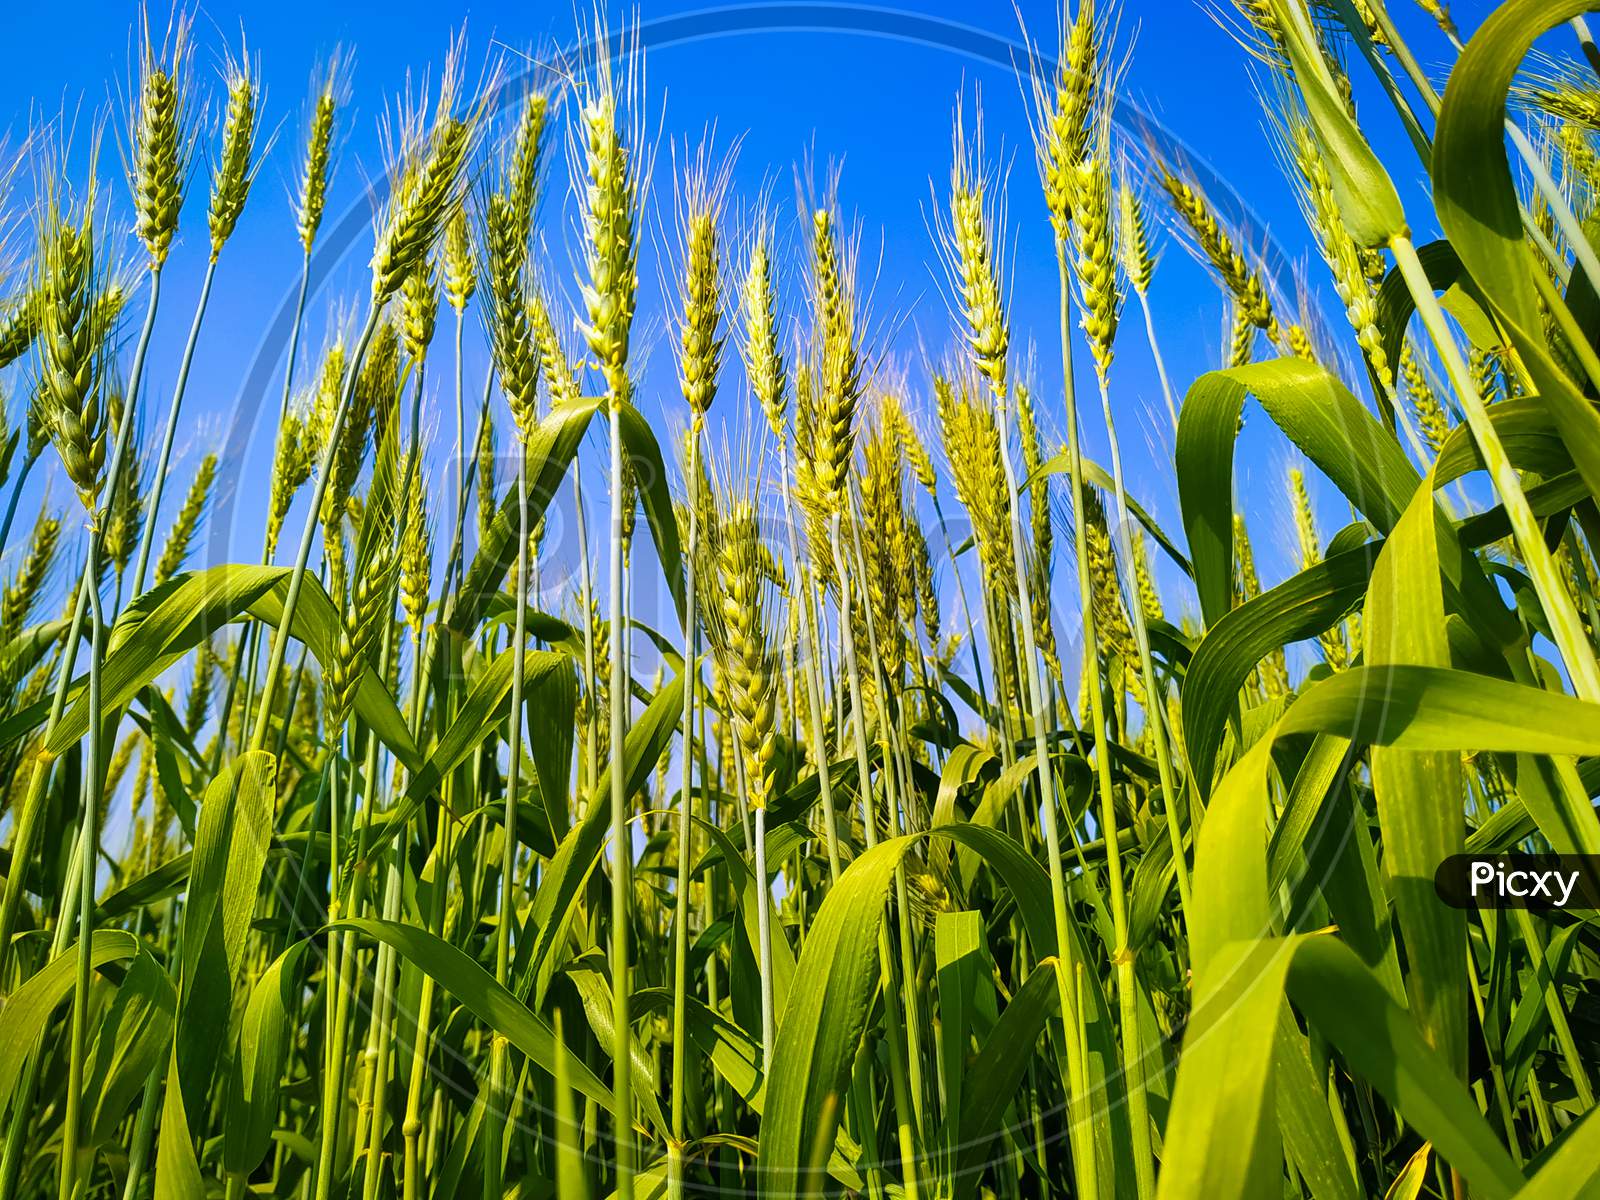 Wheat Crop Growing In Field